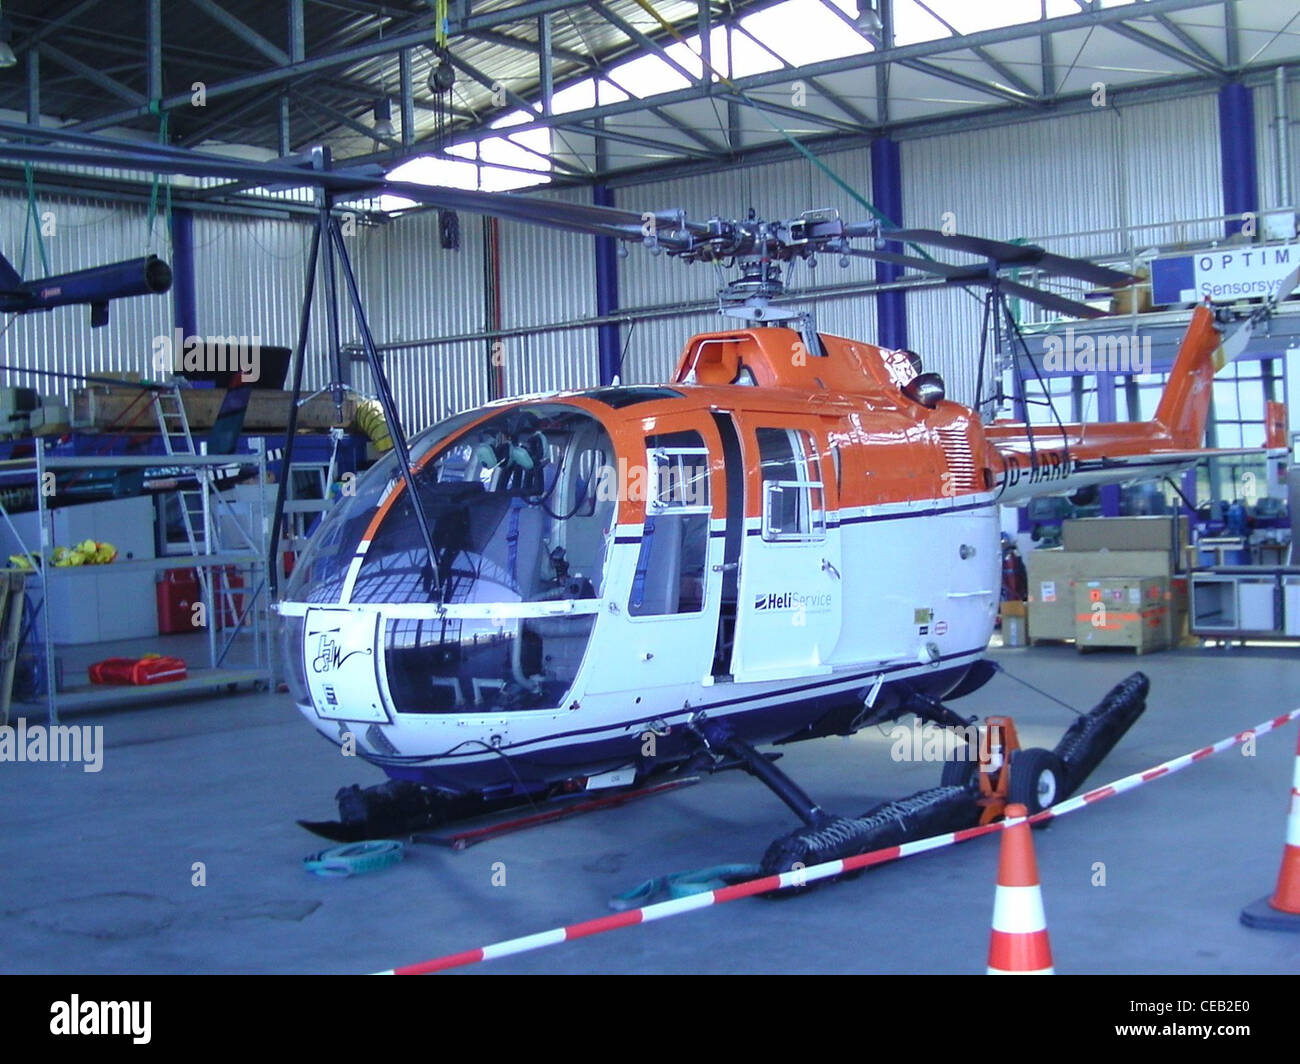 MBB Bo 105 elicottero con registrazione D-HARO in un hangar presso l'aerodromo di Bremerhaven Foto Stock